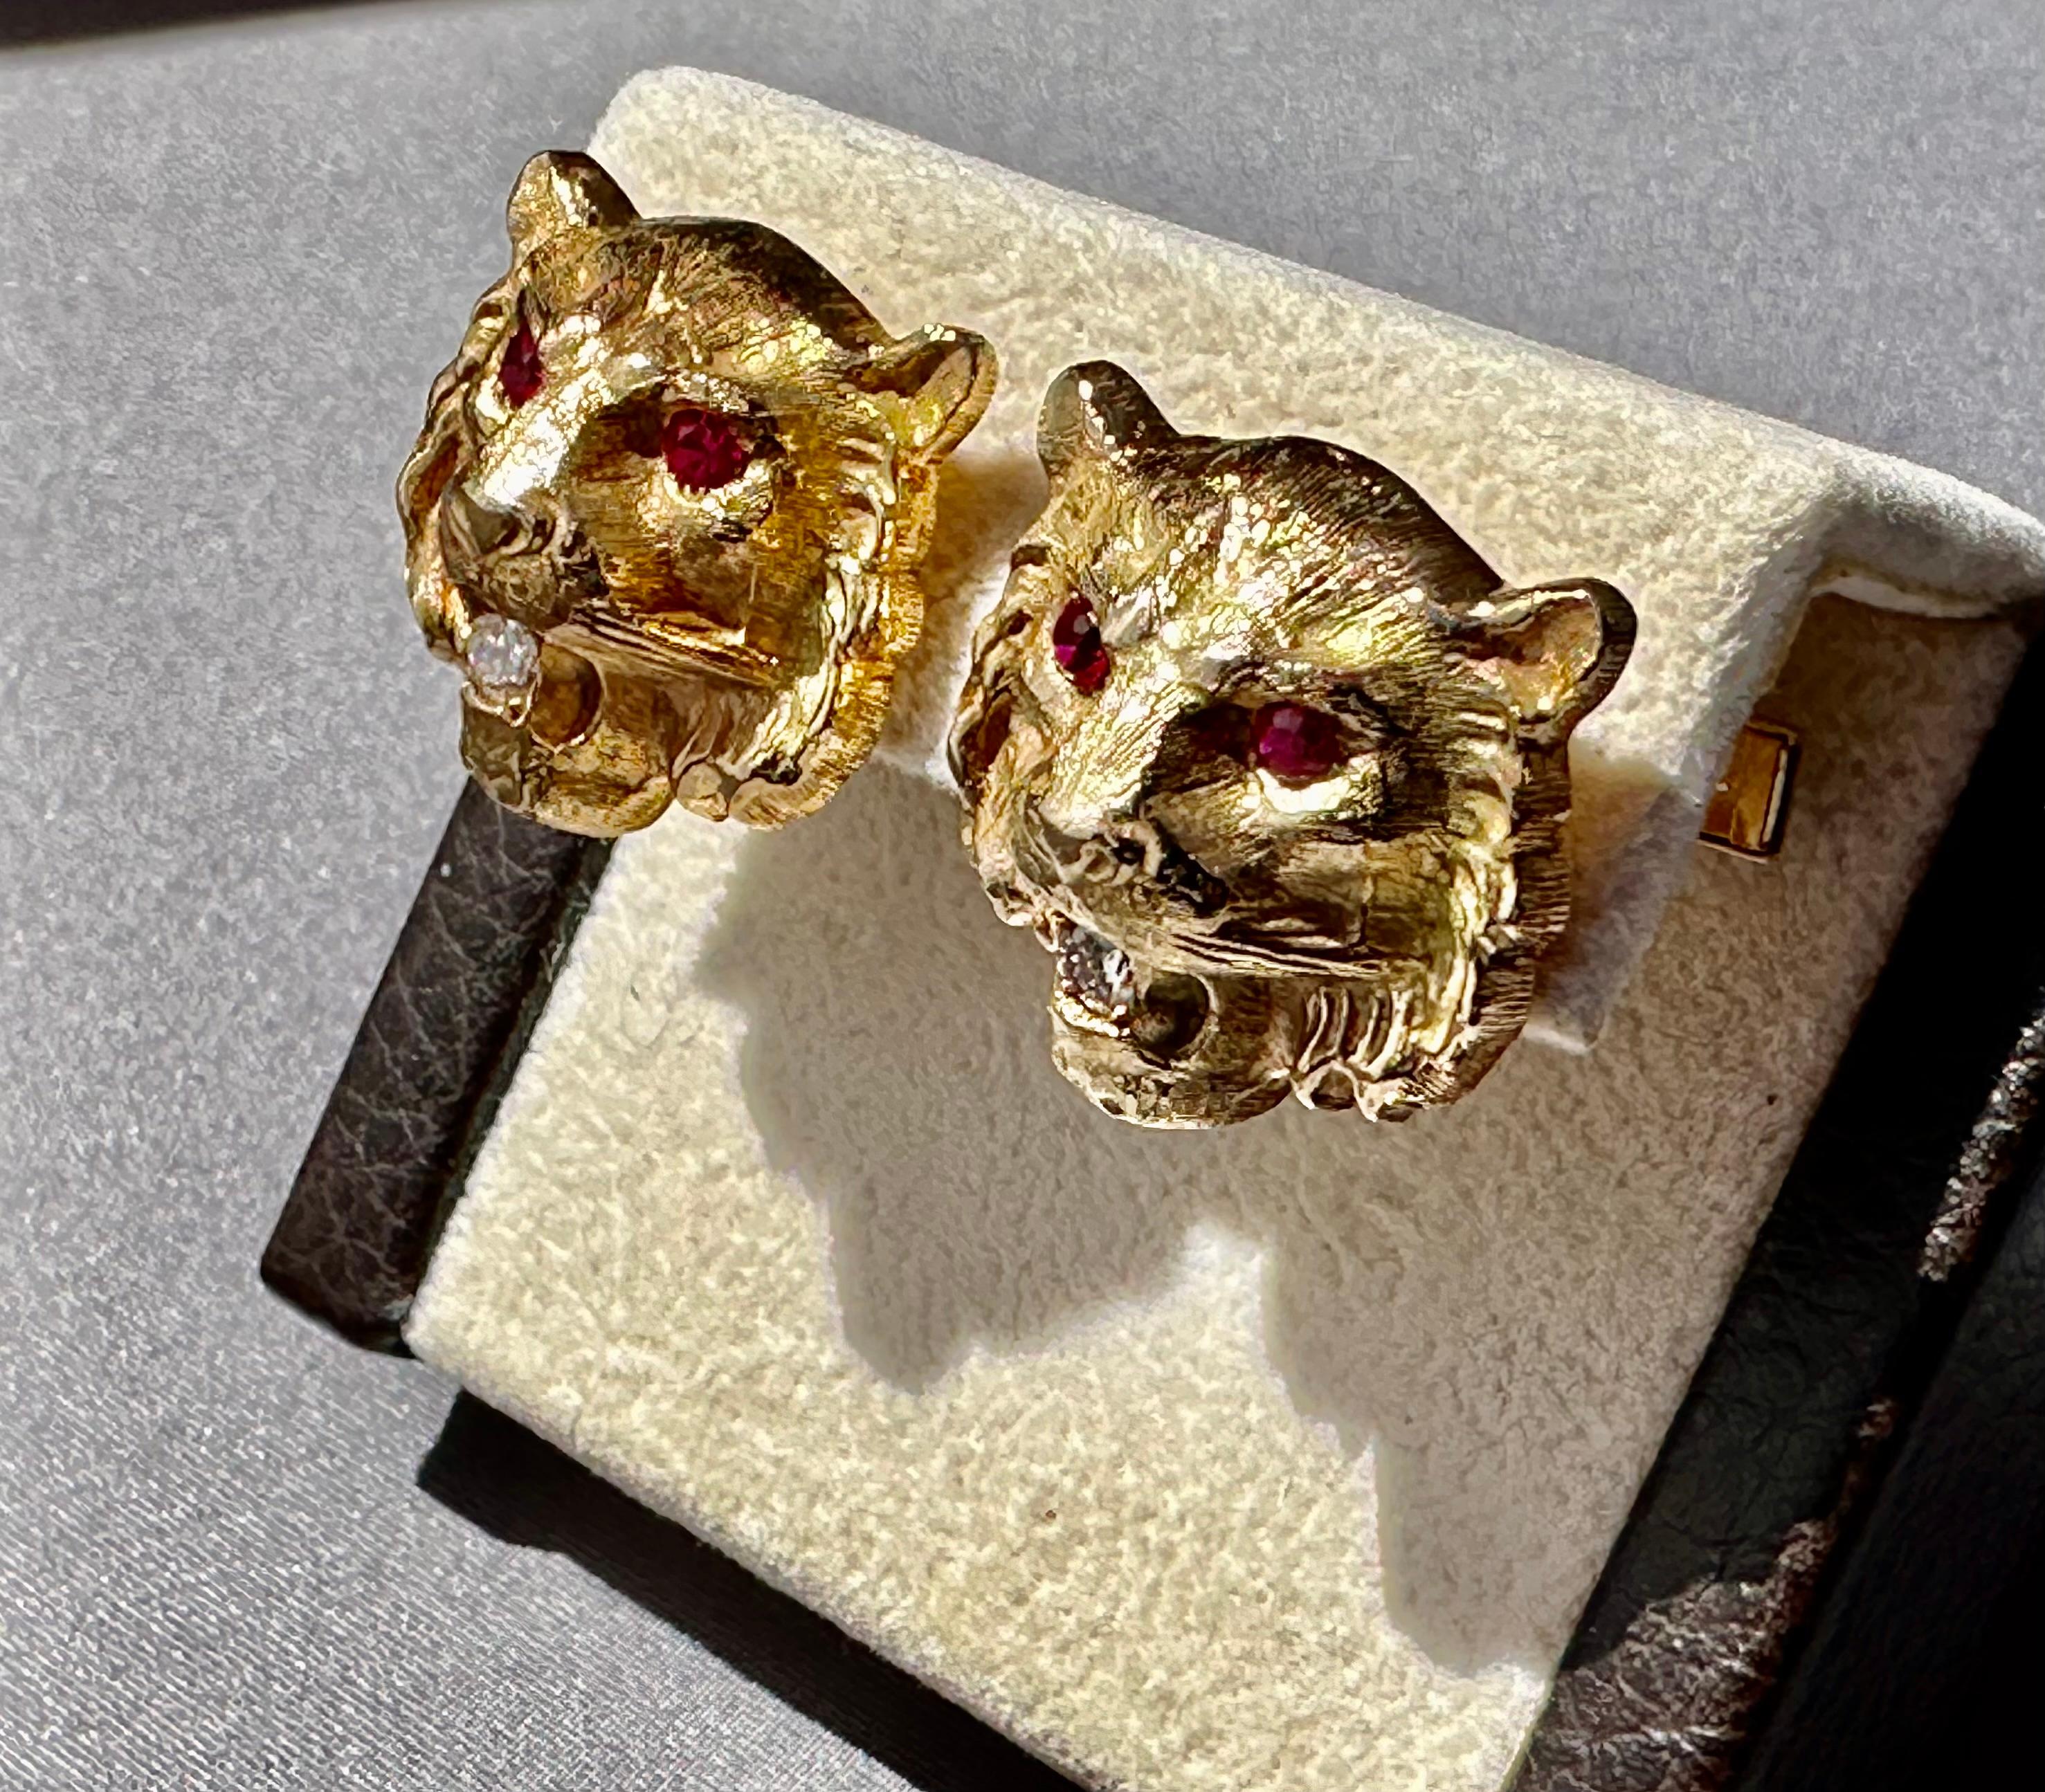 Manschettenknöpfe für Herren, maßgefertigt Rubin Diamant & 14k Gold Löwe / Tiger

Beschreibung / Zustand: Neu.  Alle Schmuckstücke wurden professionell geprüft und gereinigt, bevor sie zum Verkauf angeboten wurden. 

Hersteller: Sonderanfertigung